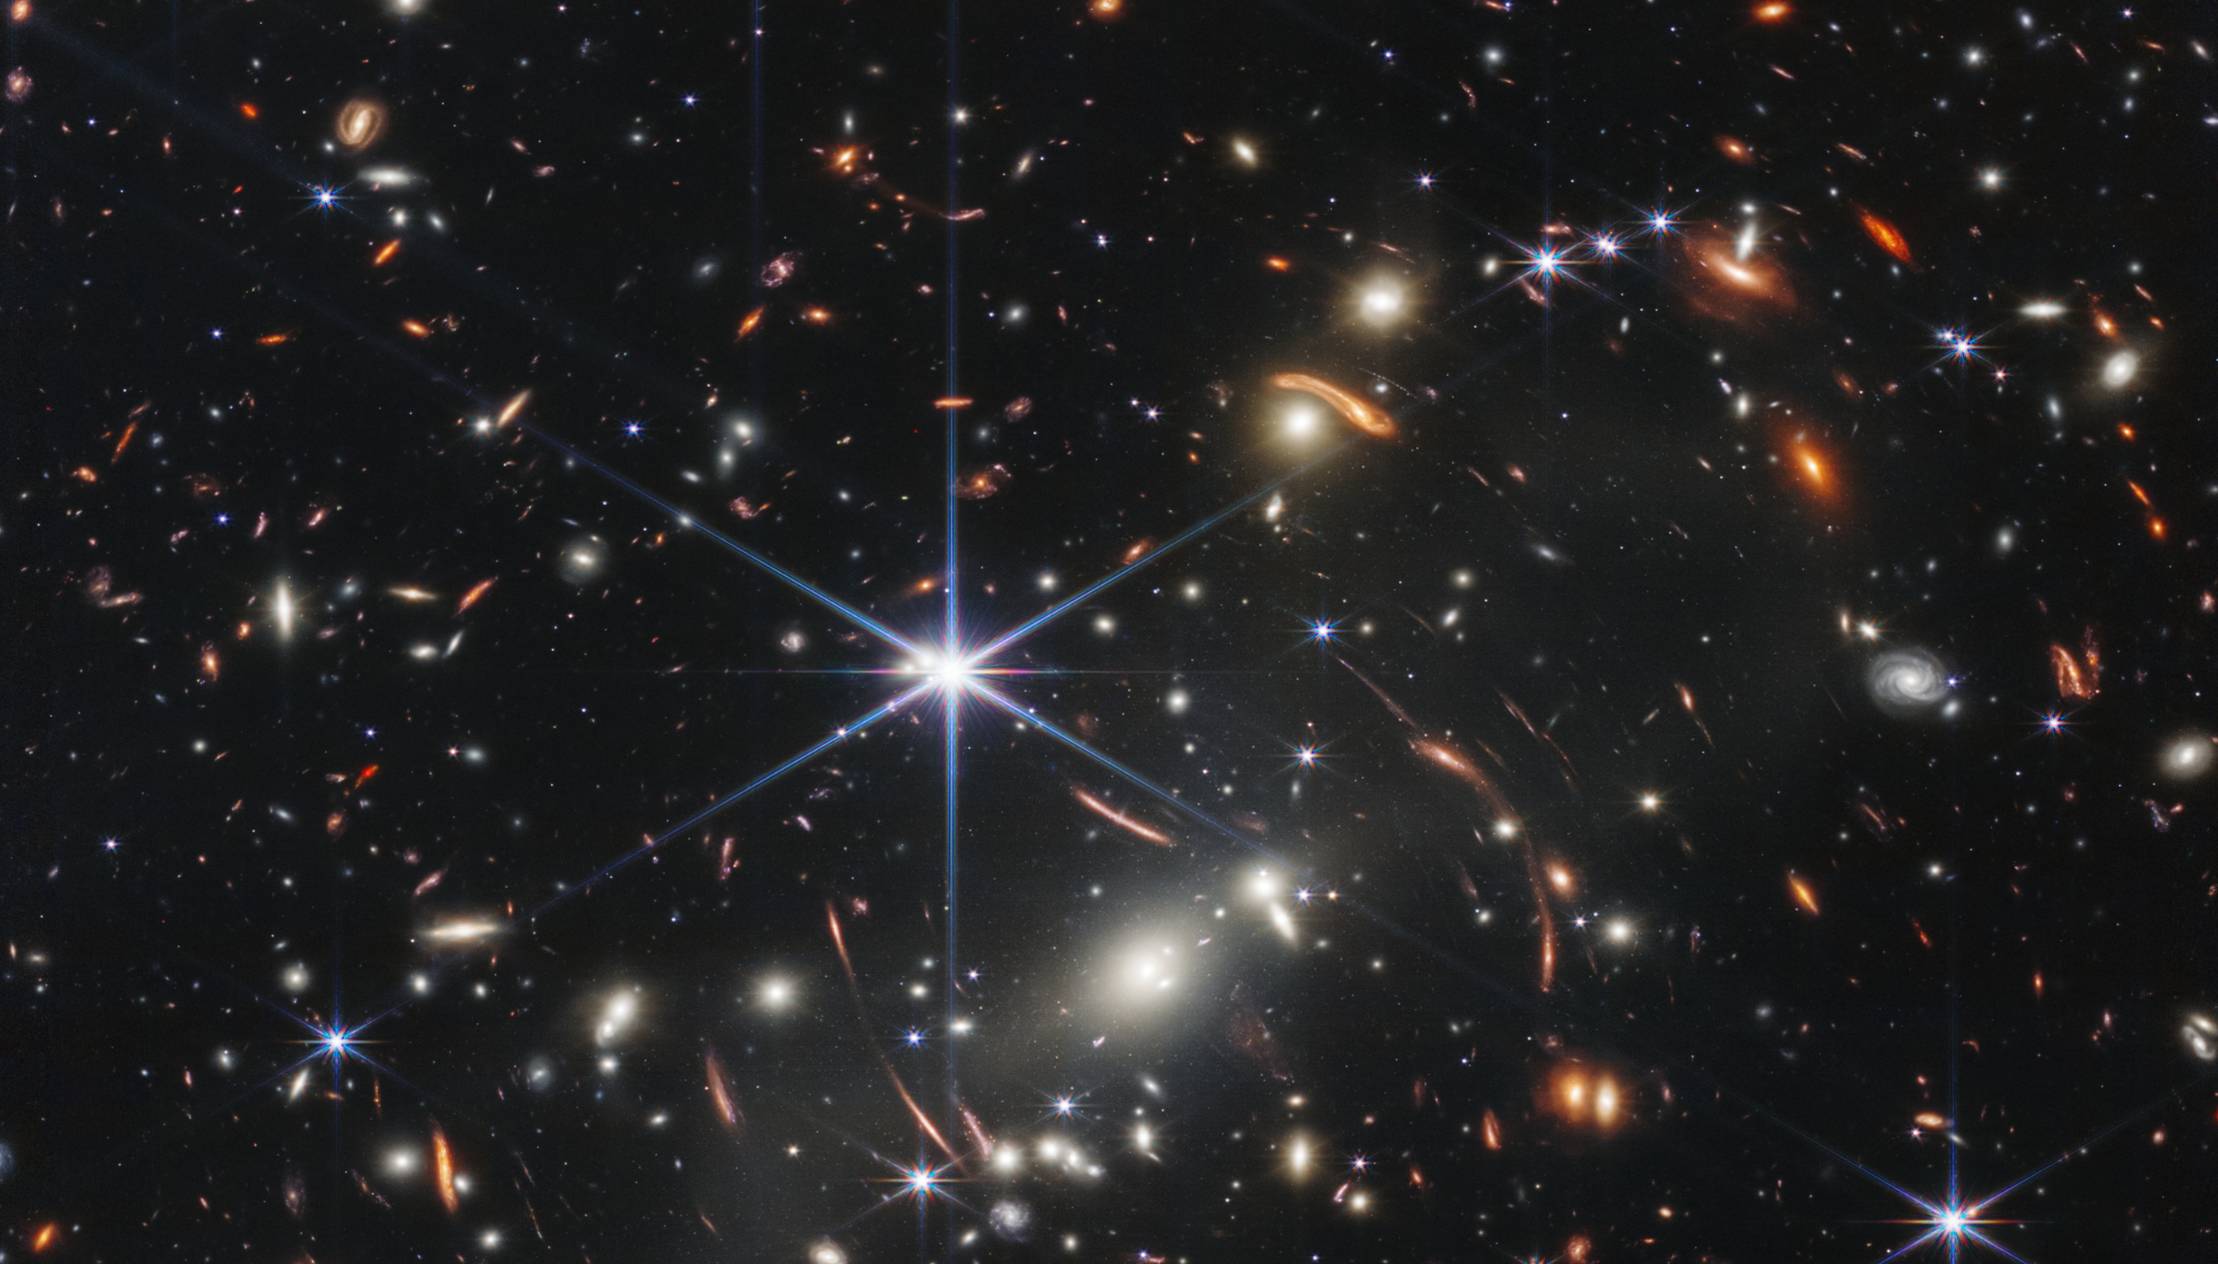 Image de l'univers profond capturée par le télescope James-Webb.